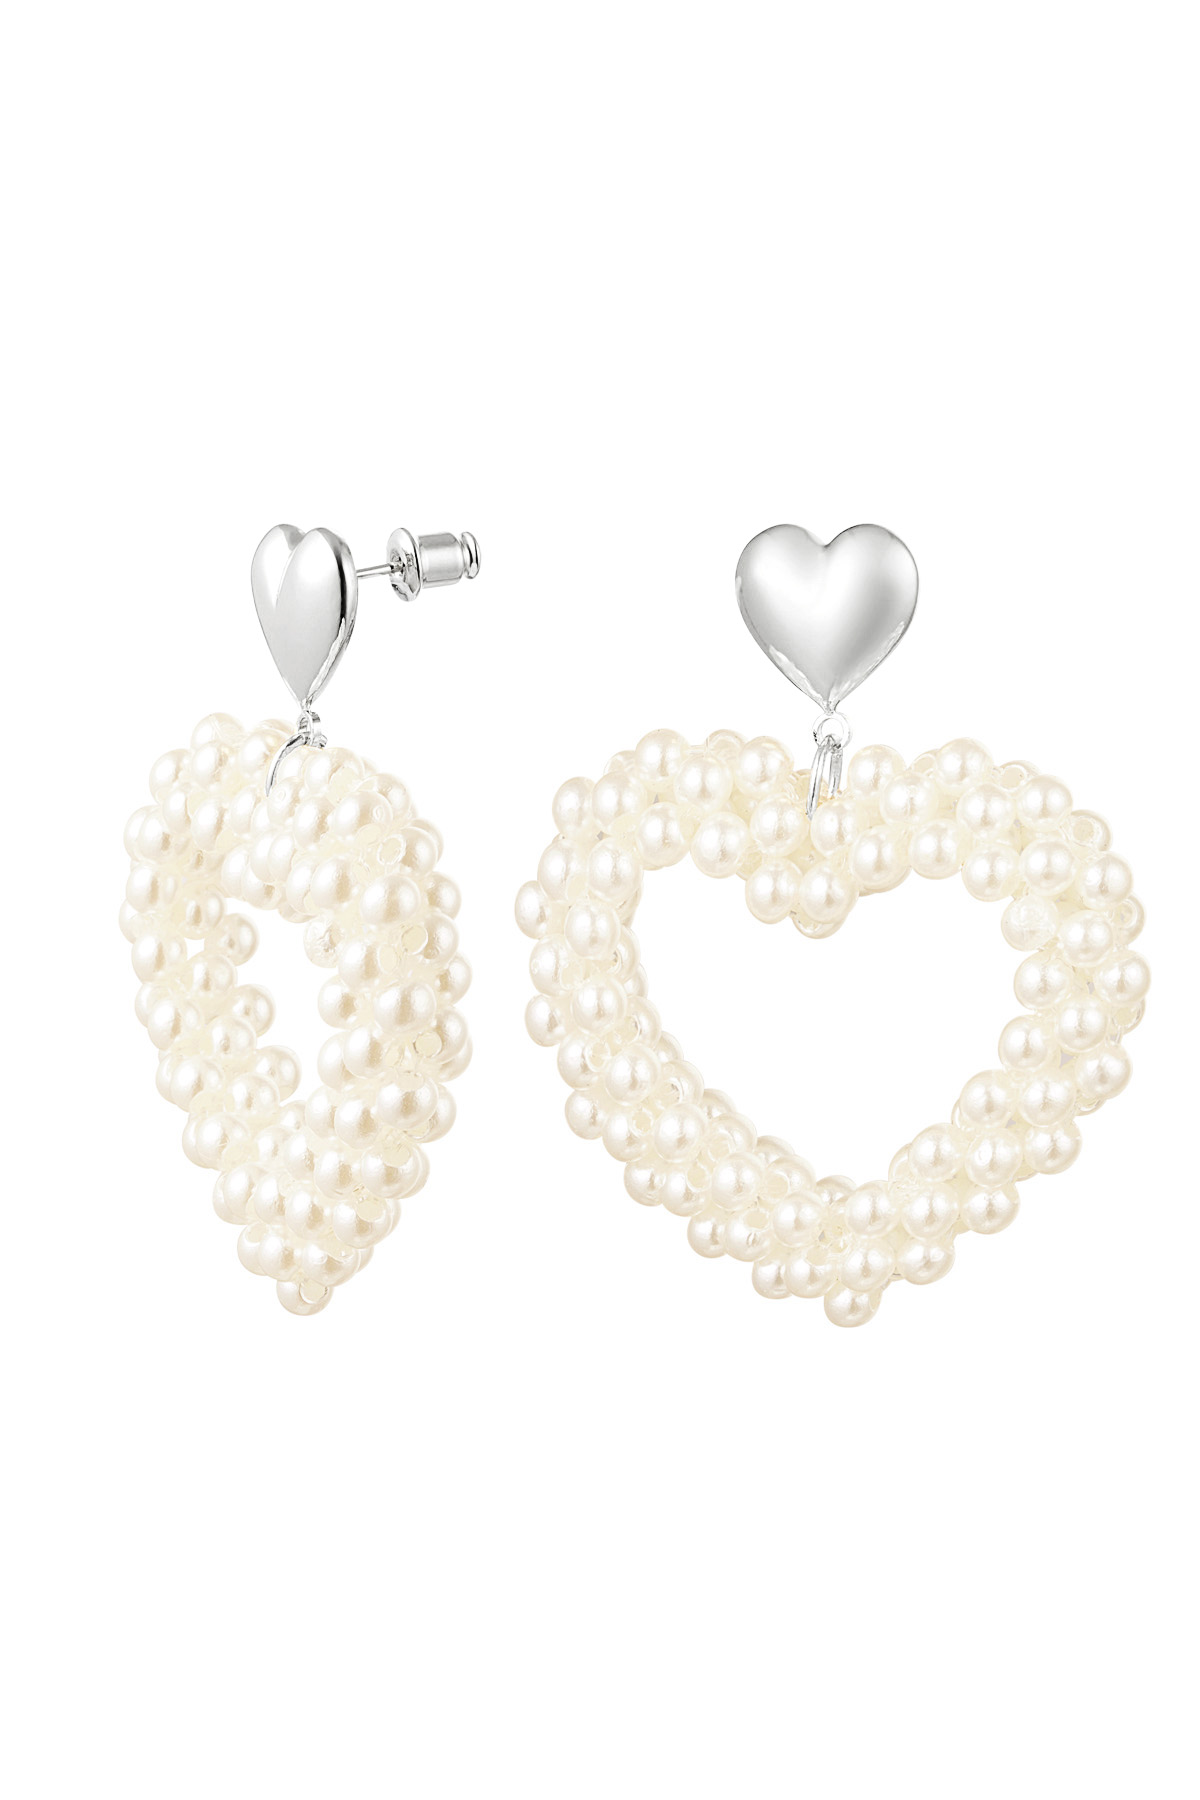 Earrings heart pearls - silver Copper